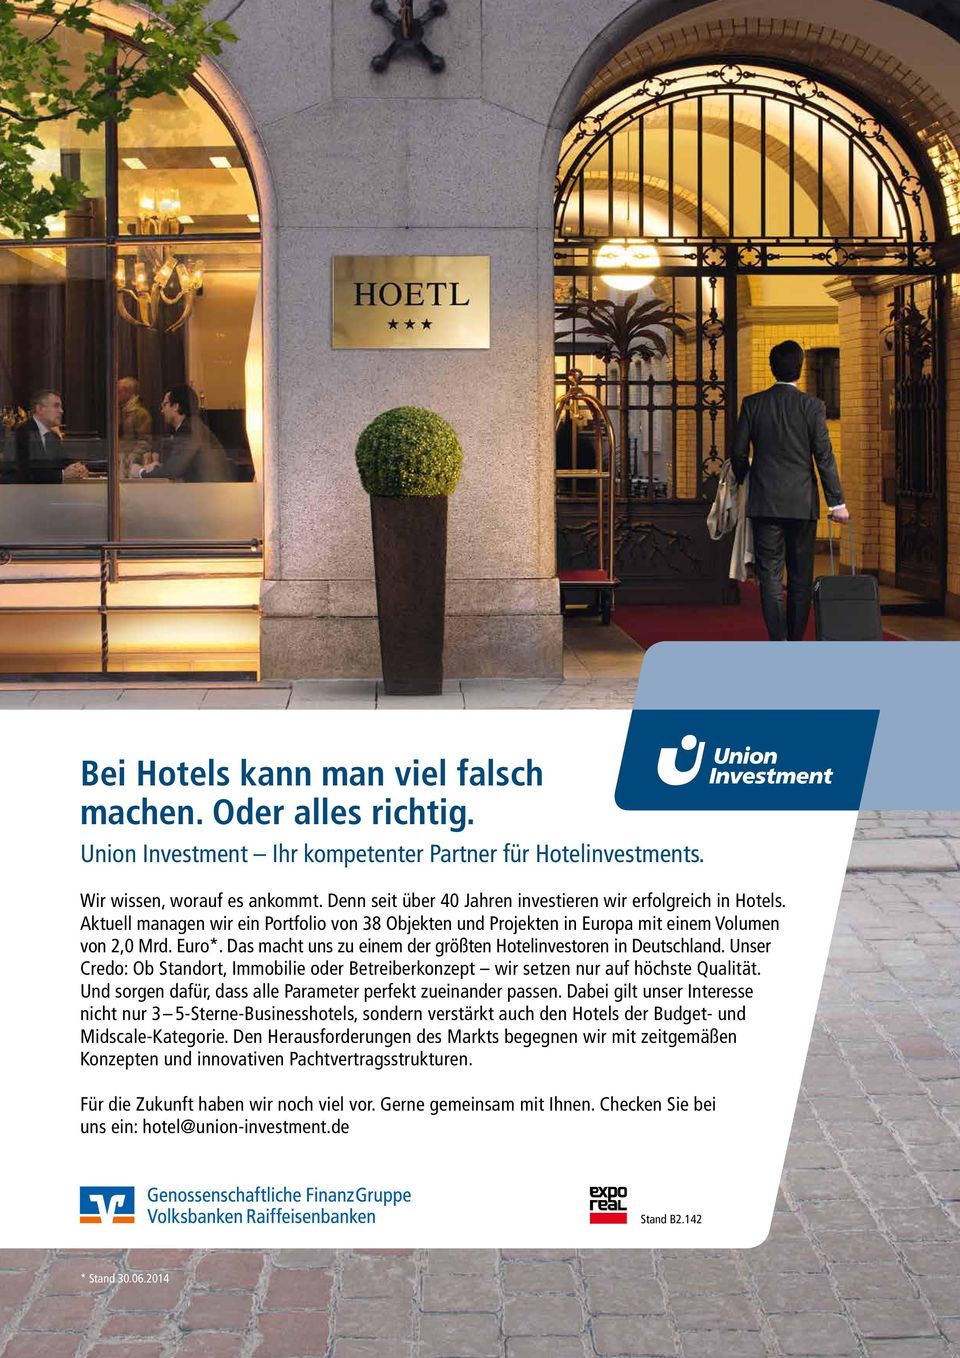 Euro*. Das macht uns zu einem der größten Hotelinvestoren in Deutschland. Unser Credo: Ob Standort, Immobilie oder Betreiberkonzept wir setzen nur auf höchste Qualität.